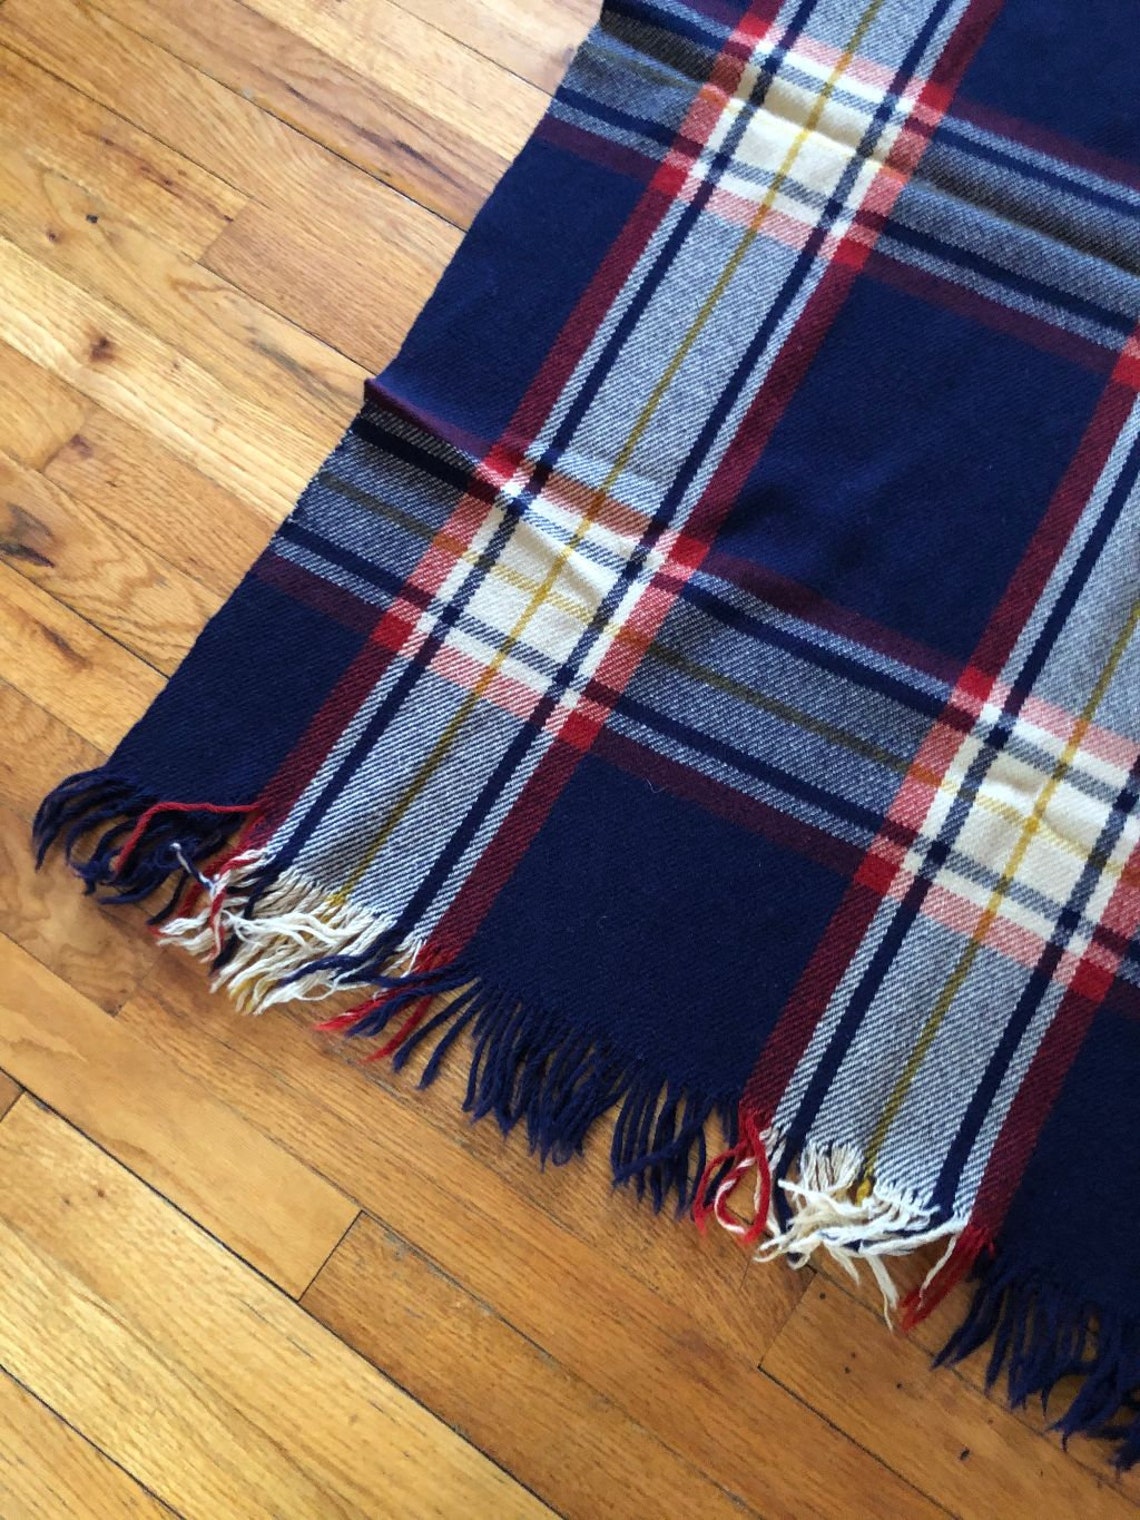 Redfern all wool Pram blanket made in England Vintage | Etsy